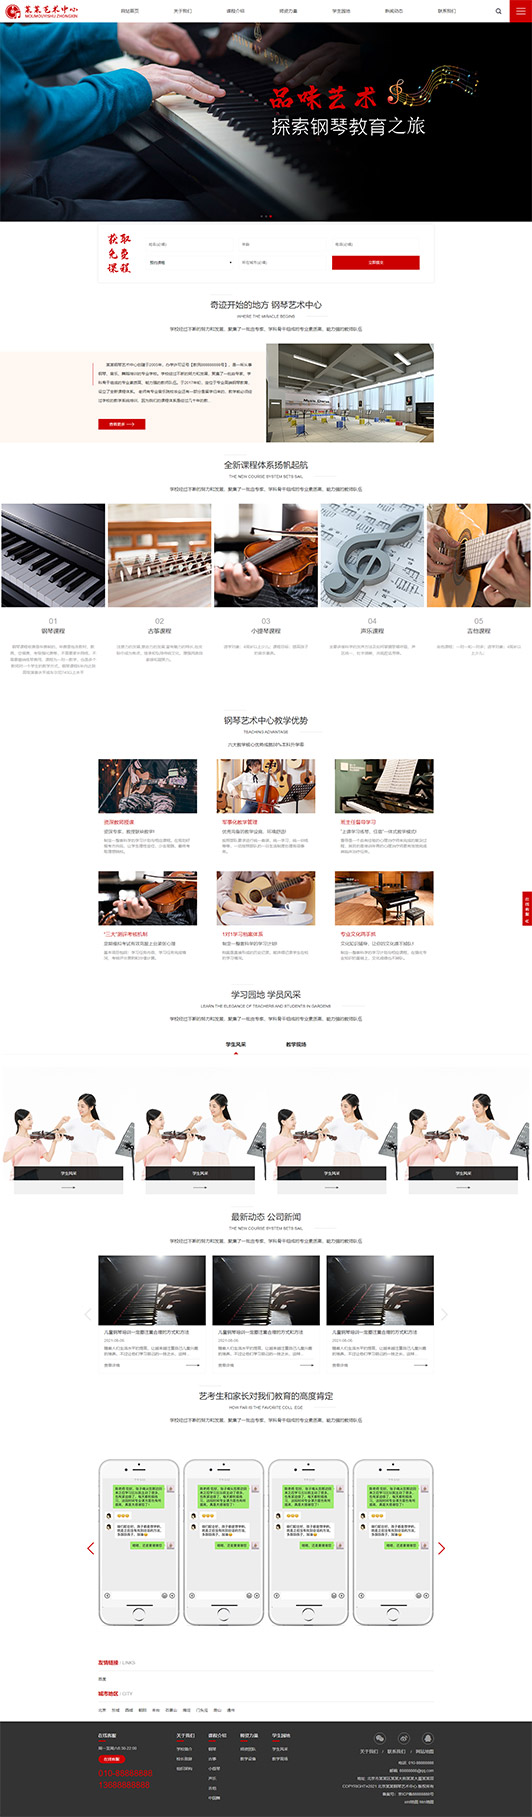 临夏钢琴艺术培训公司响应式企业网站